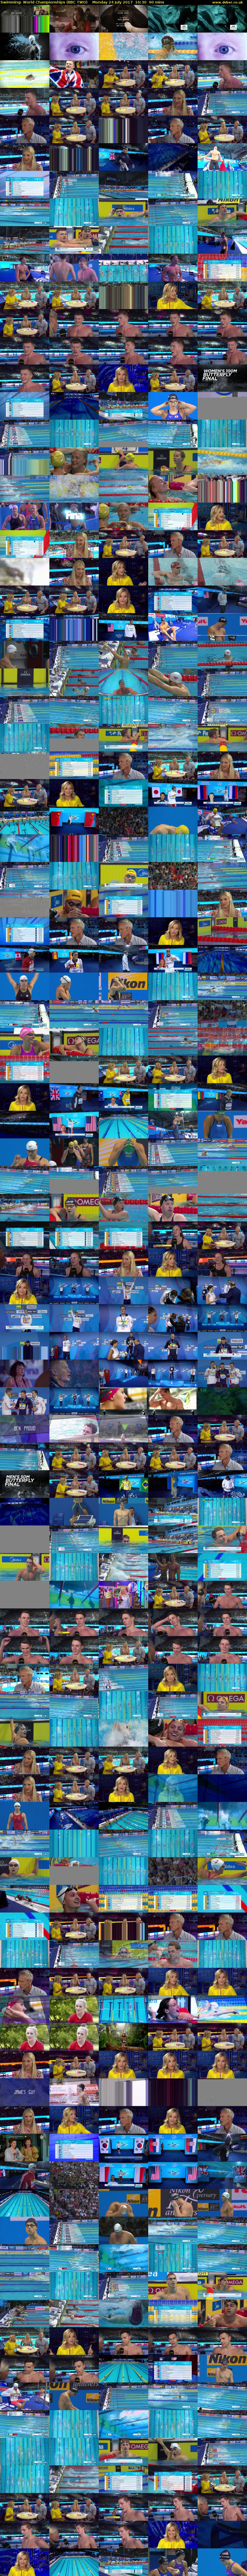 Swimming: World Championships (BBC TWO) Monday 24 July 2017 16:30 - 18:00